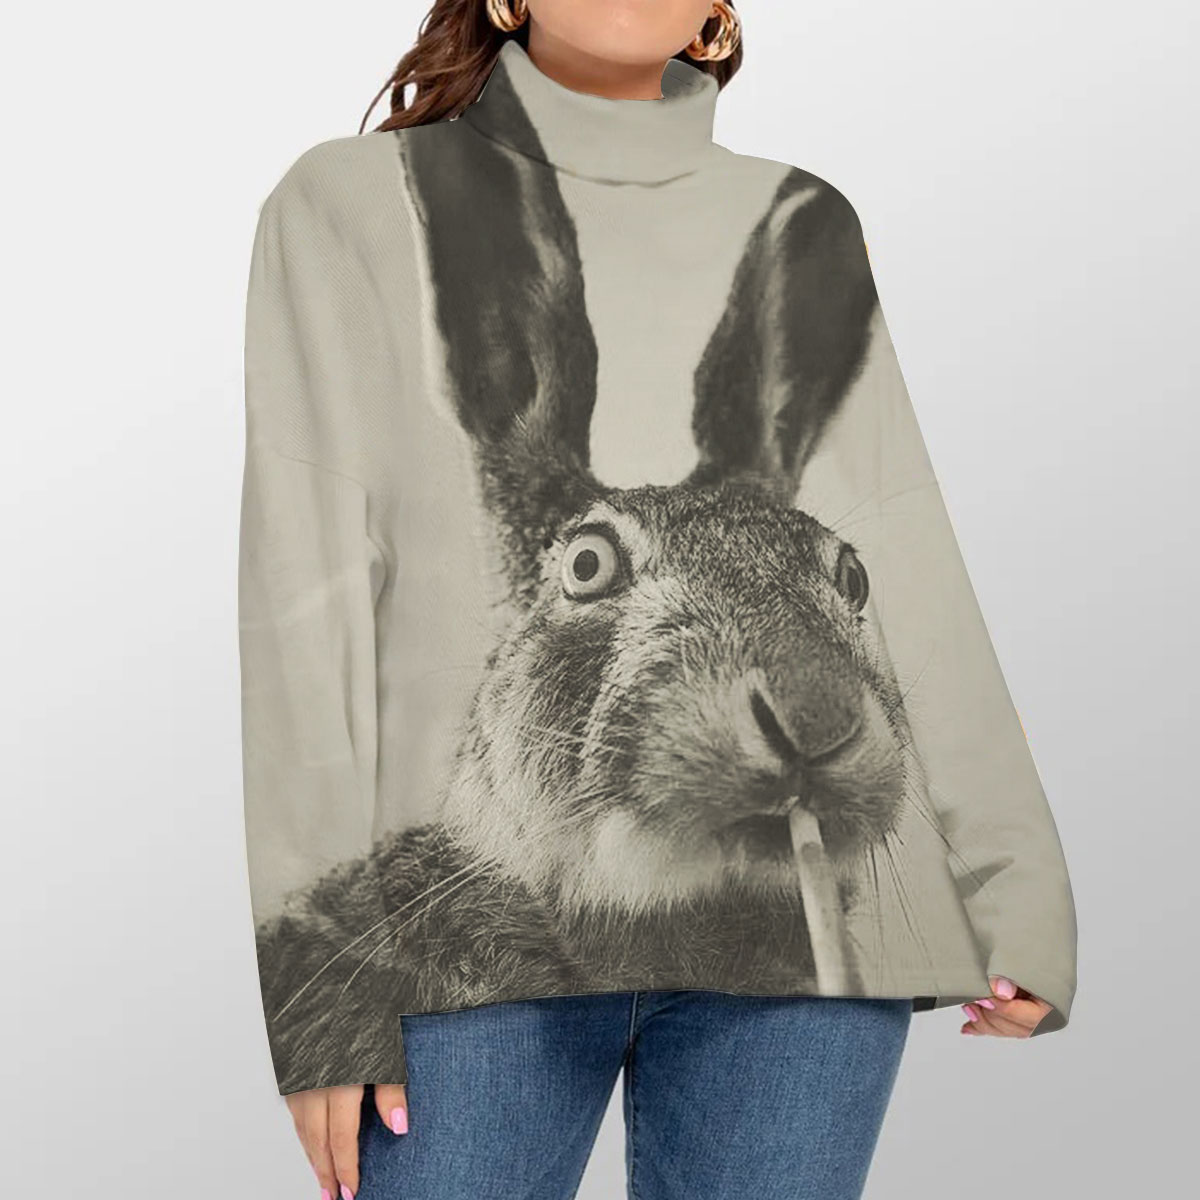 Smoking Rabbit Turtleneck Sweater